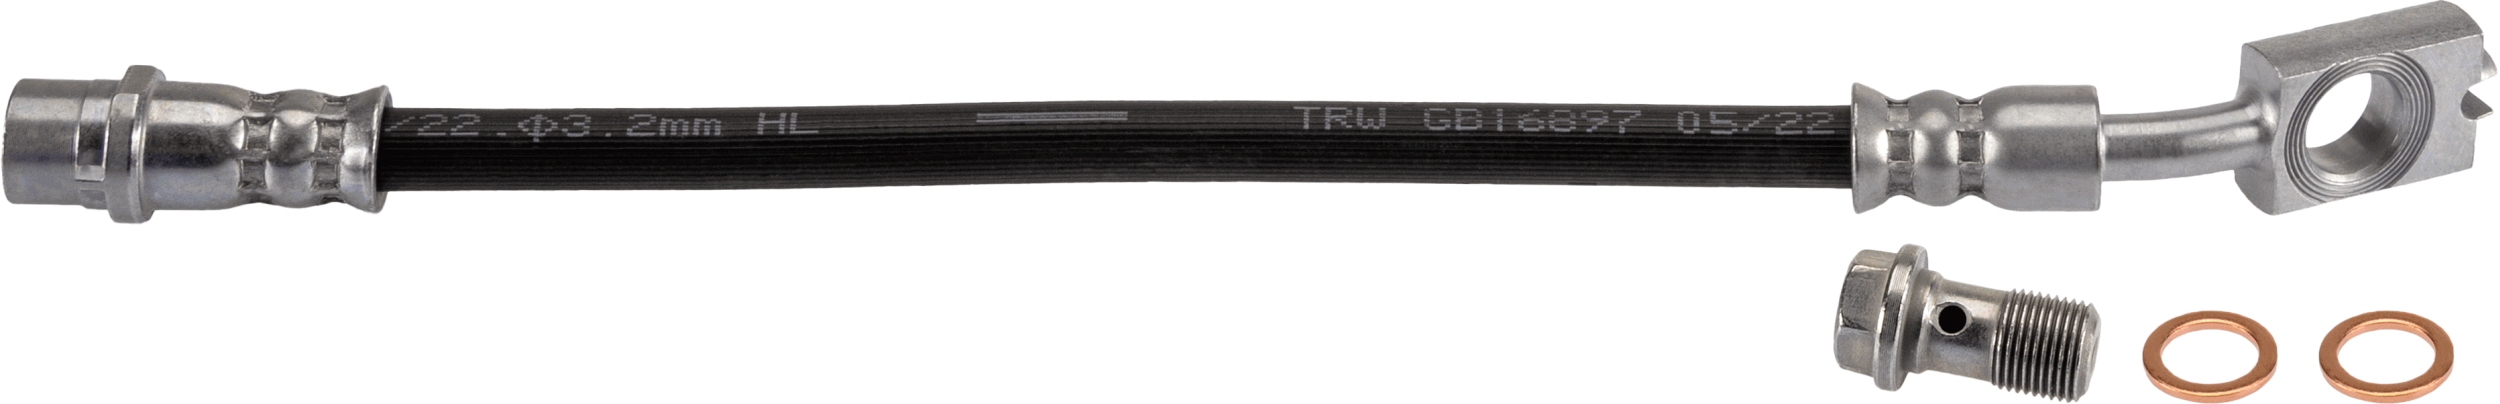 TRW PHD543 Fékcső, gumifékcső